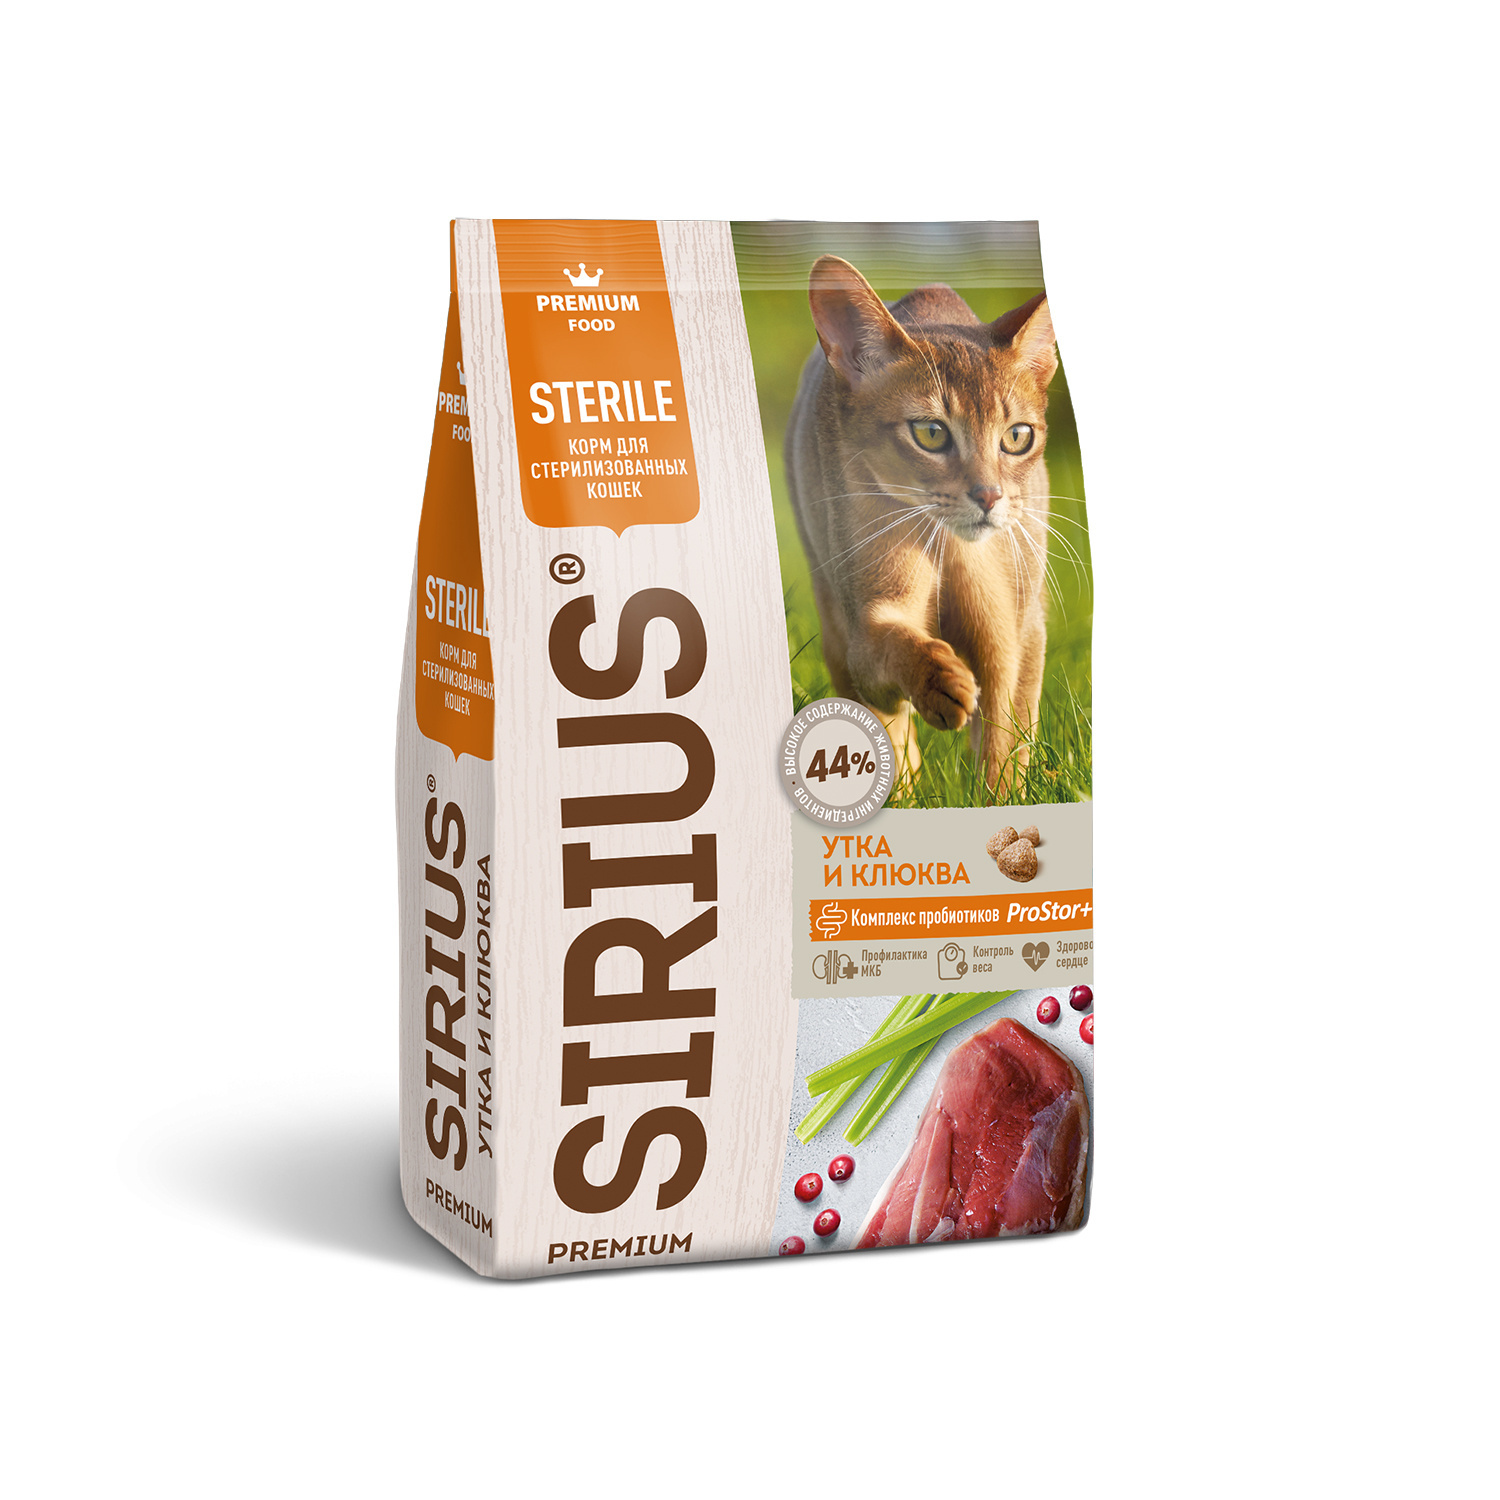 Sirius Sirius сухой корм для стерилизованных кошек, утка и клюква (10 кг) сухой сухой корм для стерилизованных кошек sirius утка с клюквой 1 5 кг